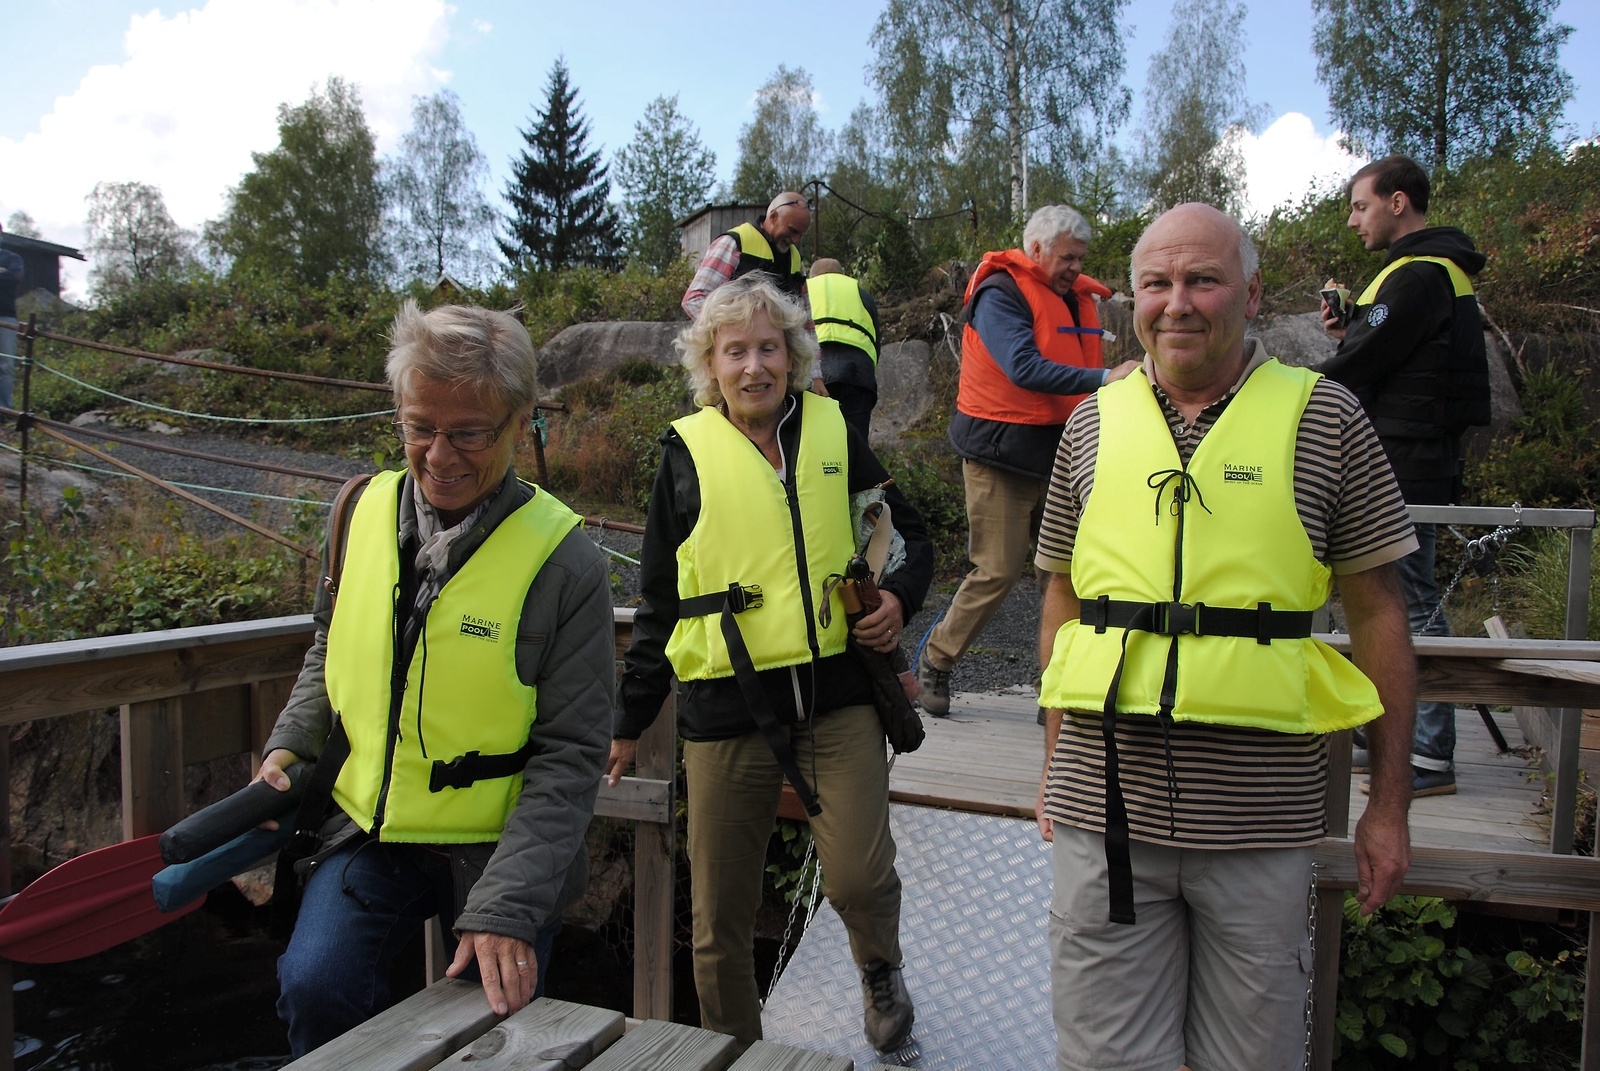 Staffan Olsson, Helén Lanneford, Sven Bramstorp, Ingrid Jönsson, Bertil Jönsson och Hans Persson tog en tur med flotten, som kördes av Erik Nilsson.